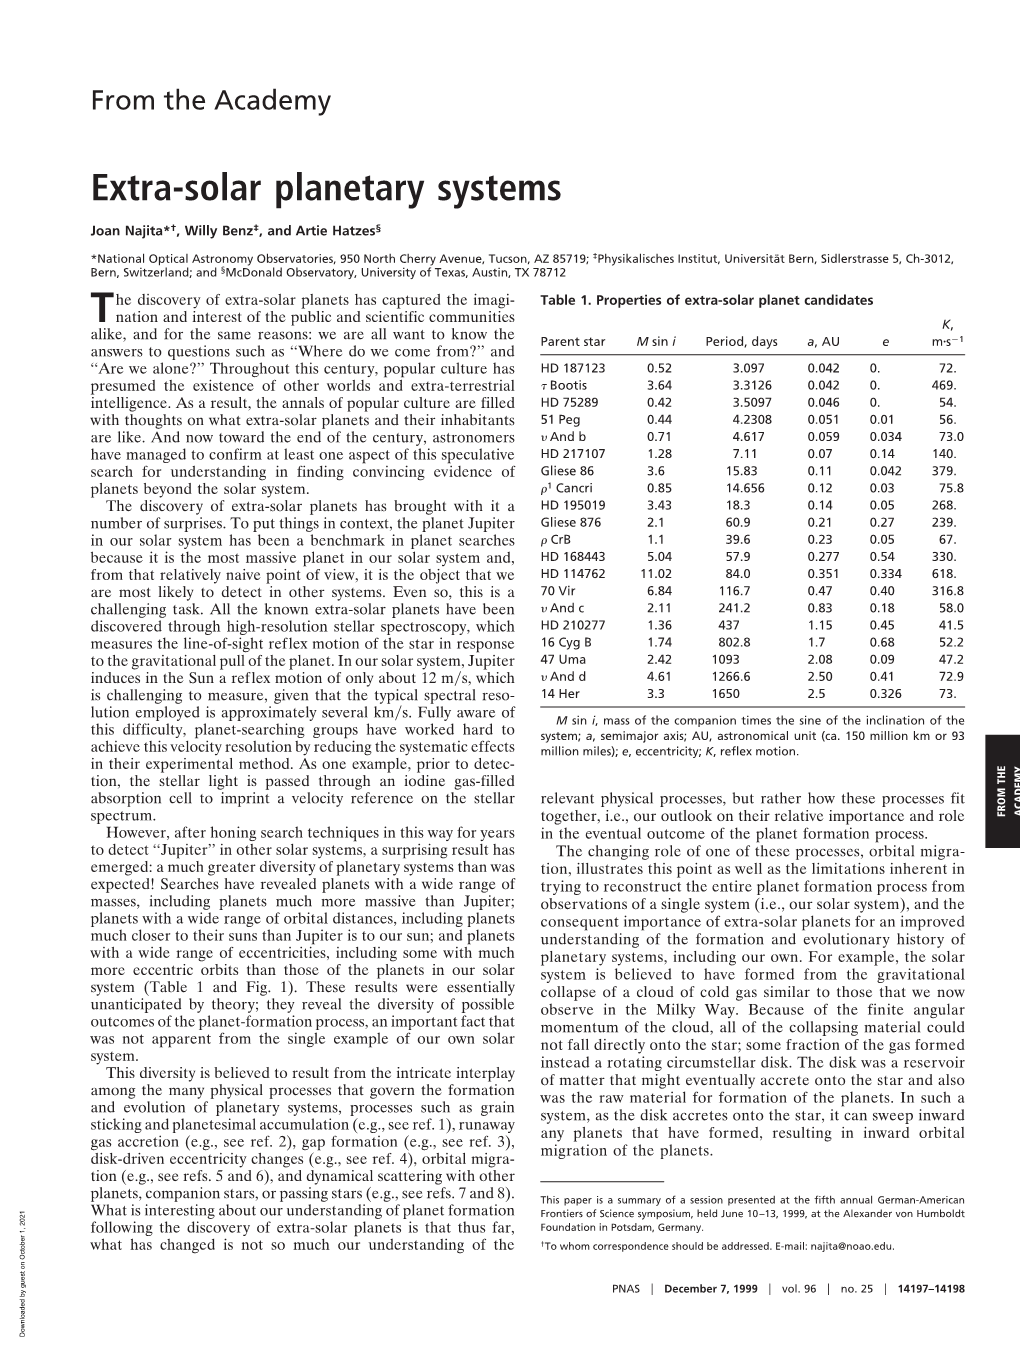 Extra-Solar Planetary Systems